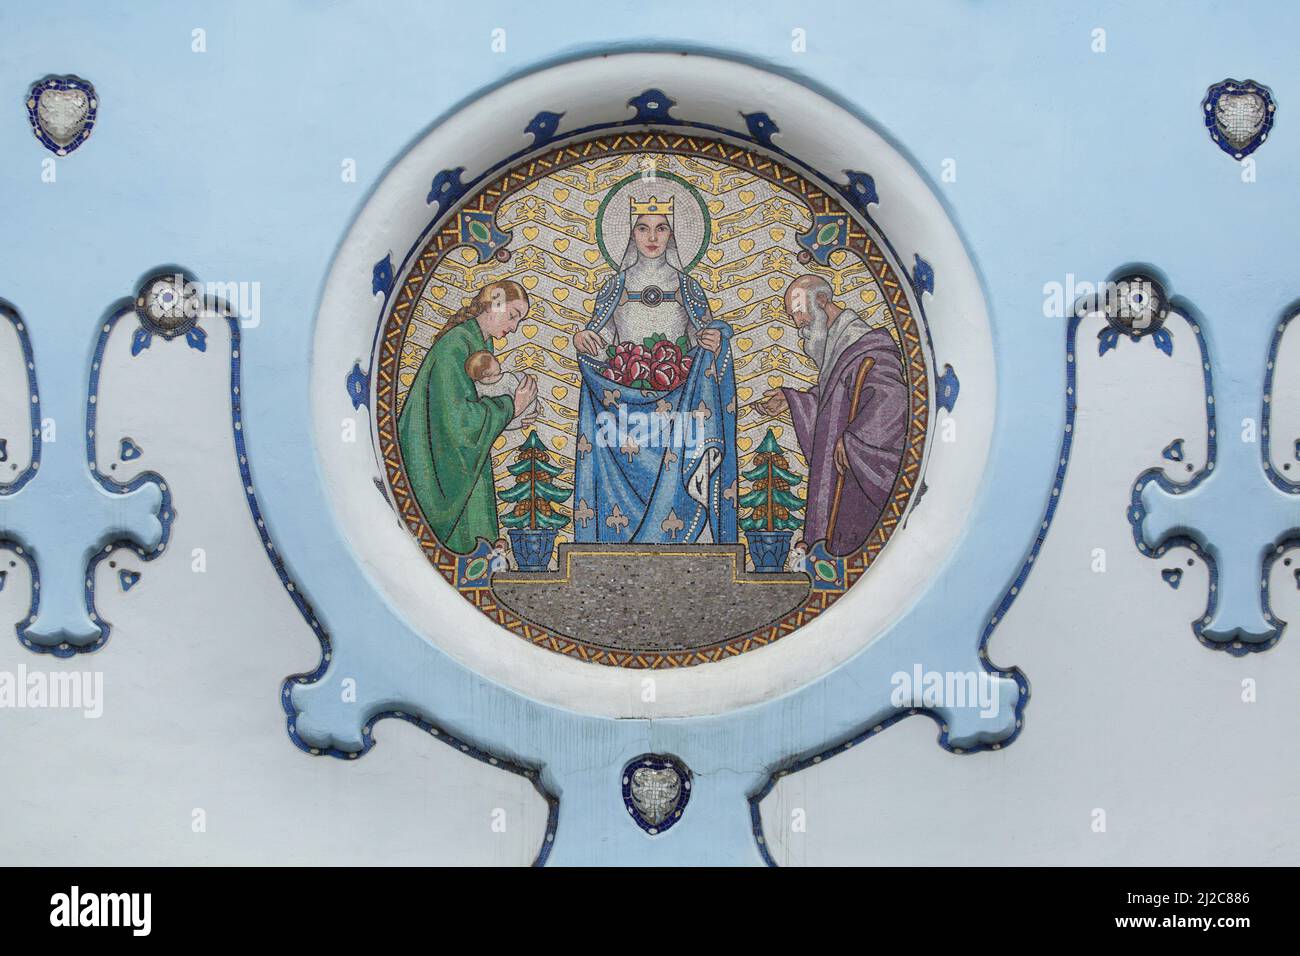 Santa Isabel de Hungría representada en el mosaico sobre la entrada principal de la Iglesia de Santa Isabel (Kostol svätej Alžbety) comúnmente conocida como la Iglesia Azul (Modrý kostolík) en Bratislava, Eslovaquia. La iglesia diseñada por el arquitecto húngaro Ödön Lechner fue construida entre 1909 y 1913 en estilo secesionista húngaro. Foto de stock